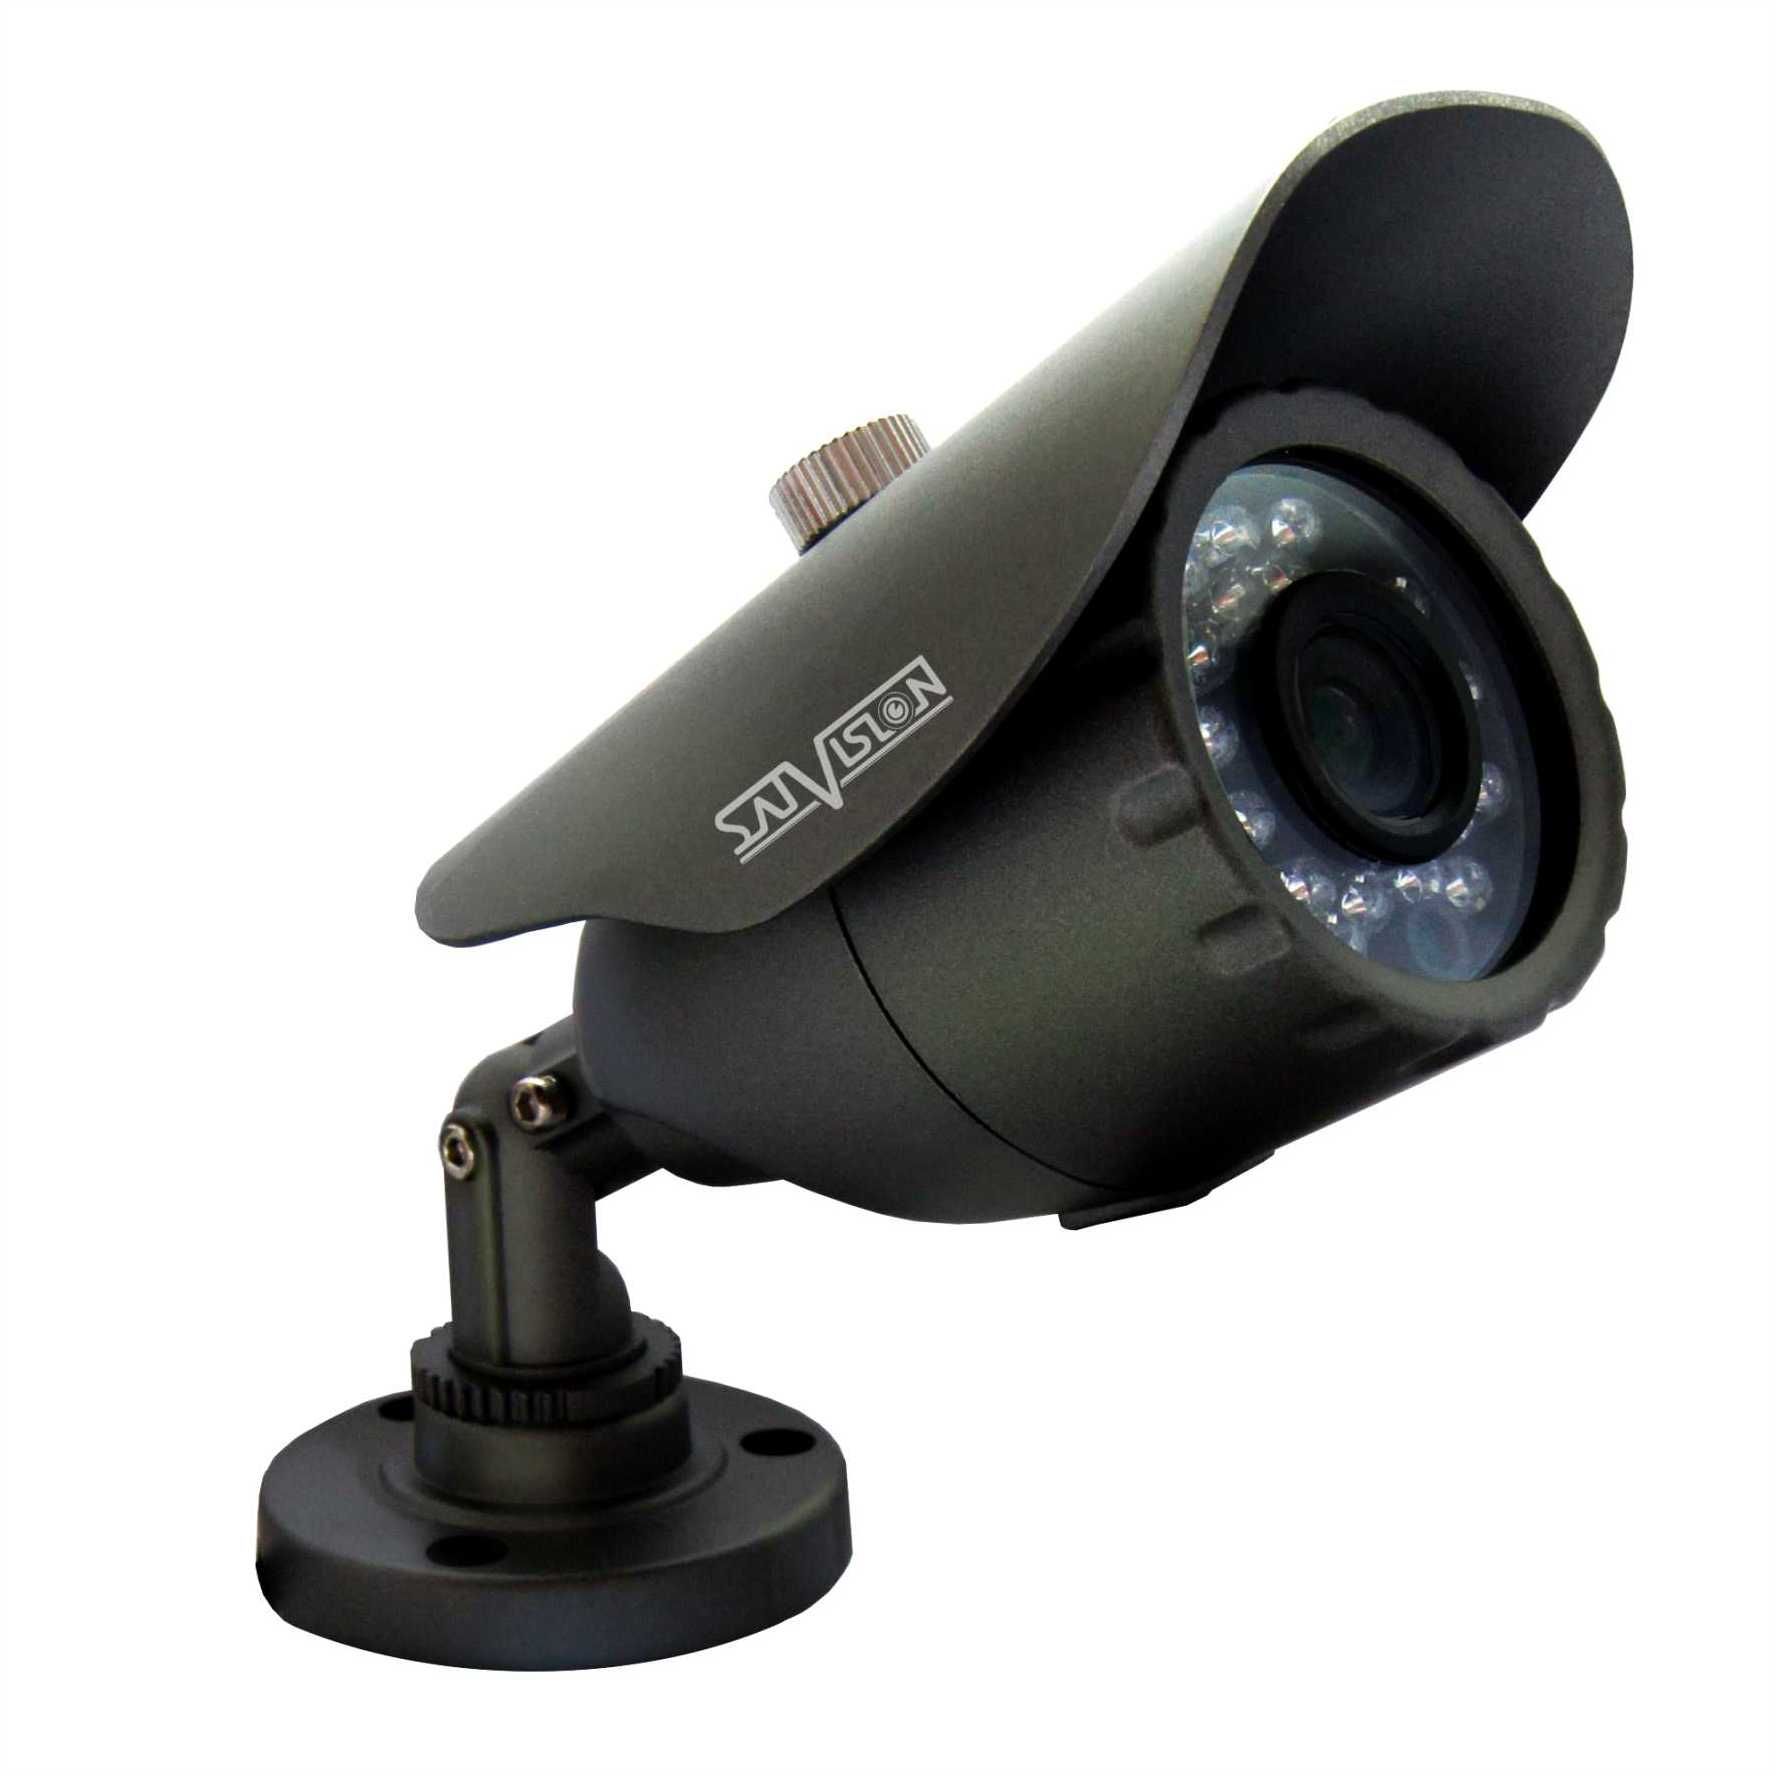 SVC-S19 (2.8мм) Видеокамера цветная уличная, 1.0 Mpix, объектив 2.8 мм, ИК-подсветка до 20 м, с OSD джойстиком, в металлическом корпусе, 12В.